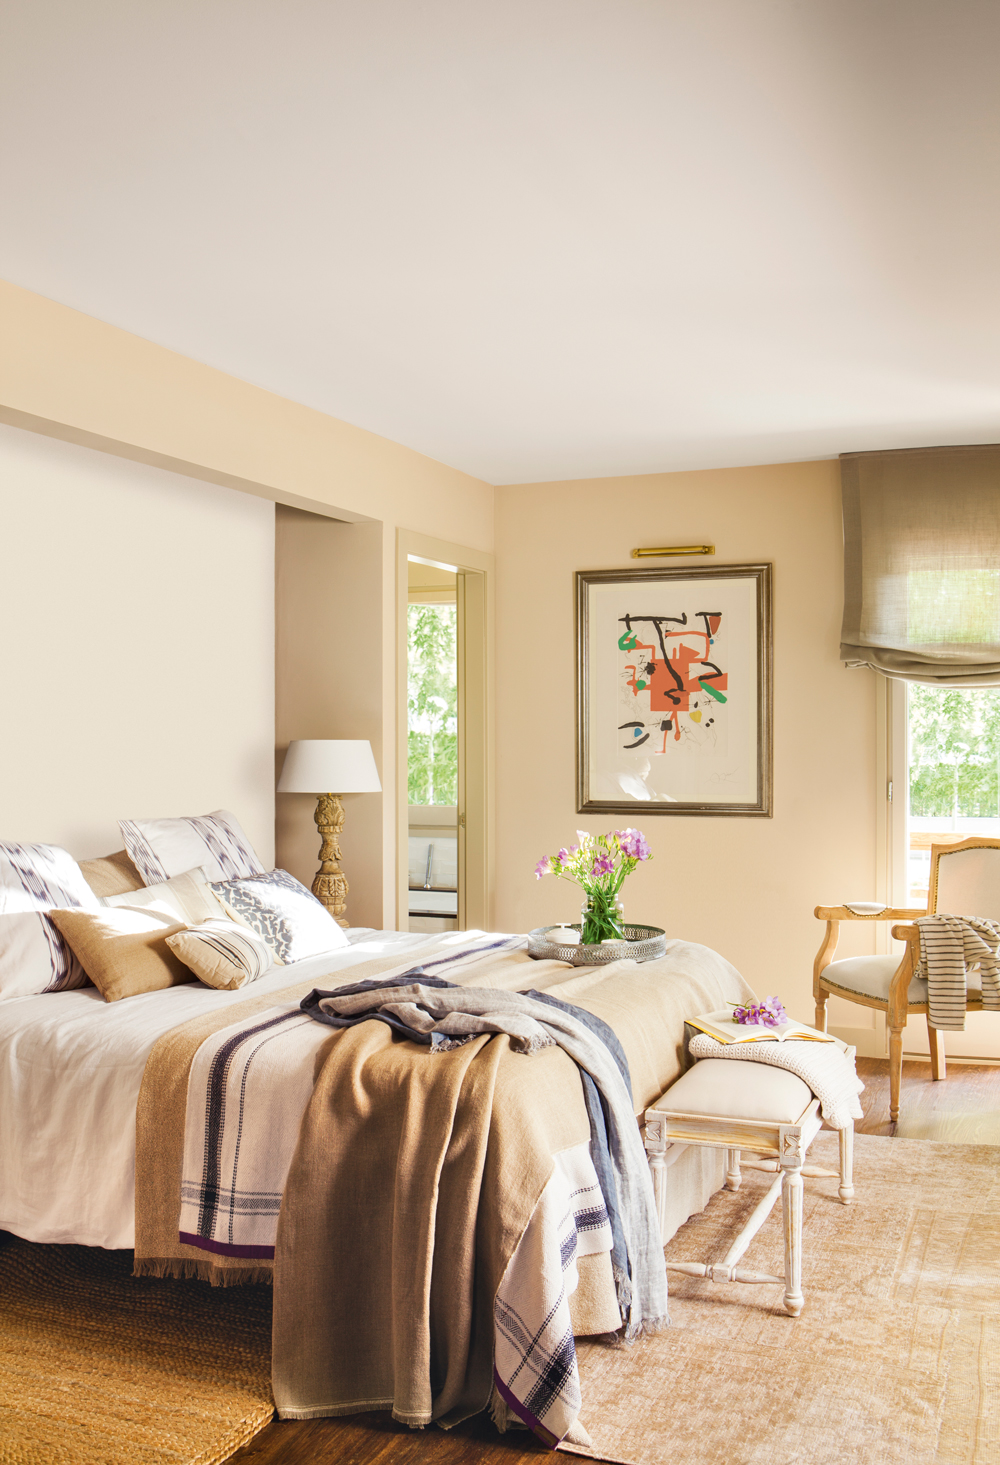 00408964. Dormitorio con paredes pintadas de distintos tonos beige, cuadro y ropa de cama en tostados 00408964